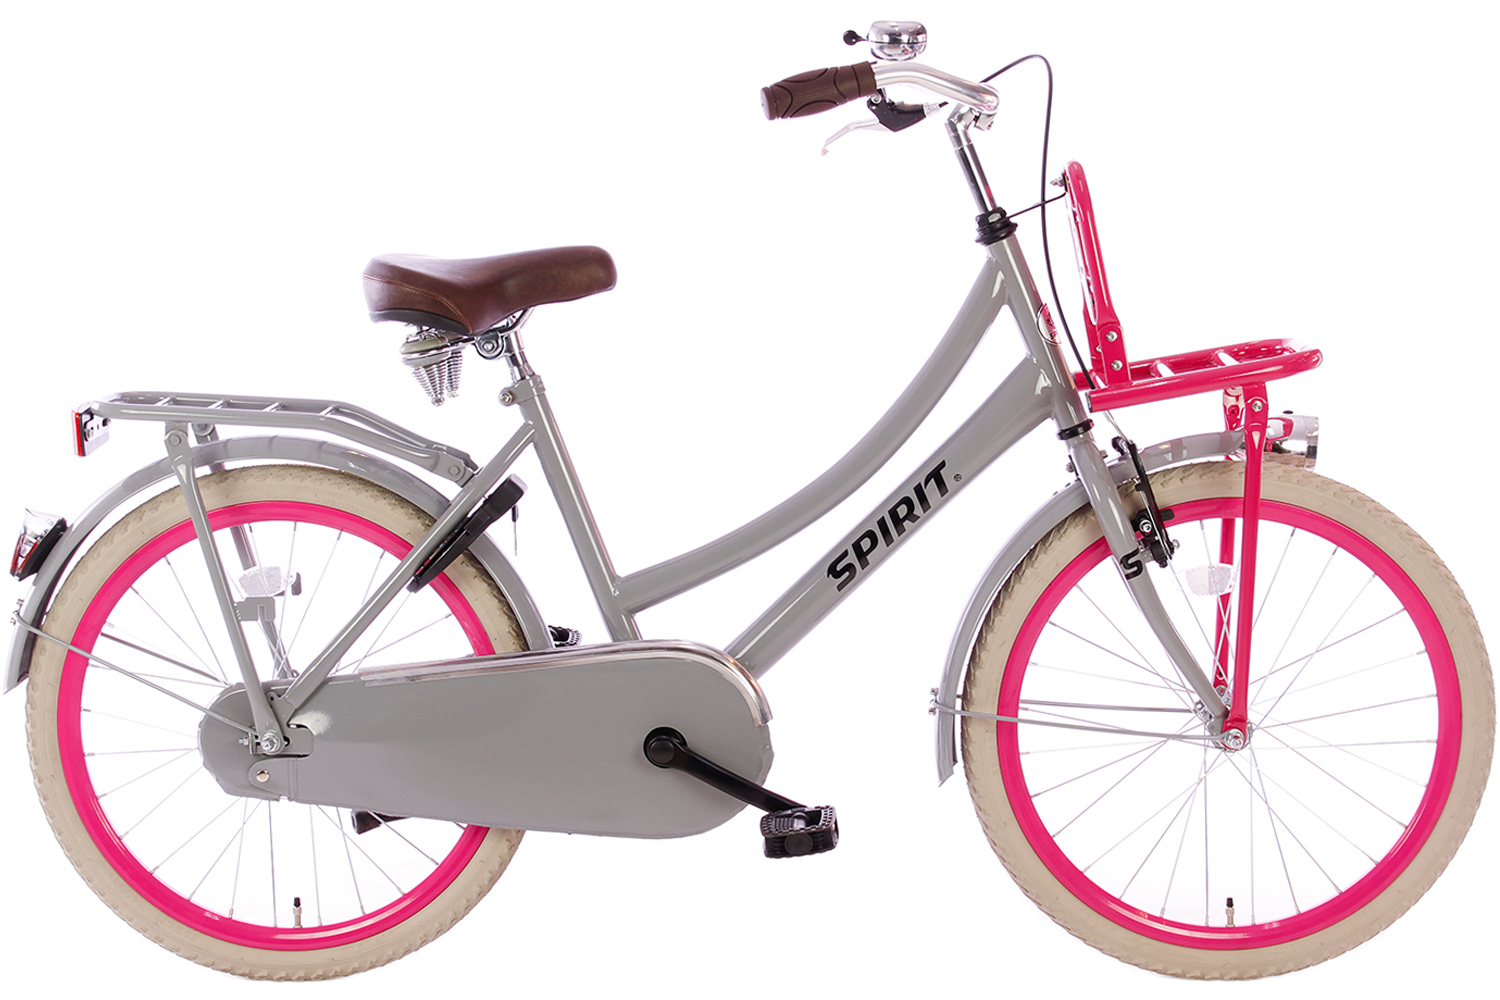 Aannames, aannames. Raad eens Onvergetelijk Slovenië Spirit Cargo Grijs-Roze Meisjesfiets 22 inch - Meisjesfiets | City-Bikes.nl